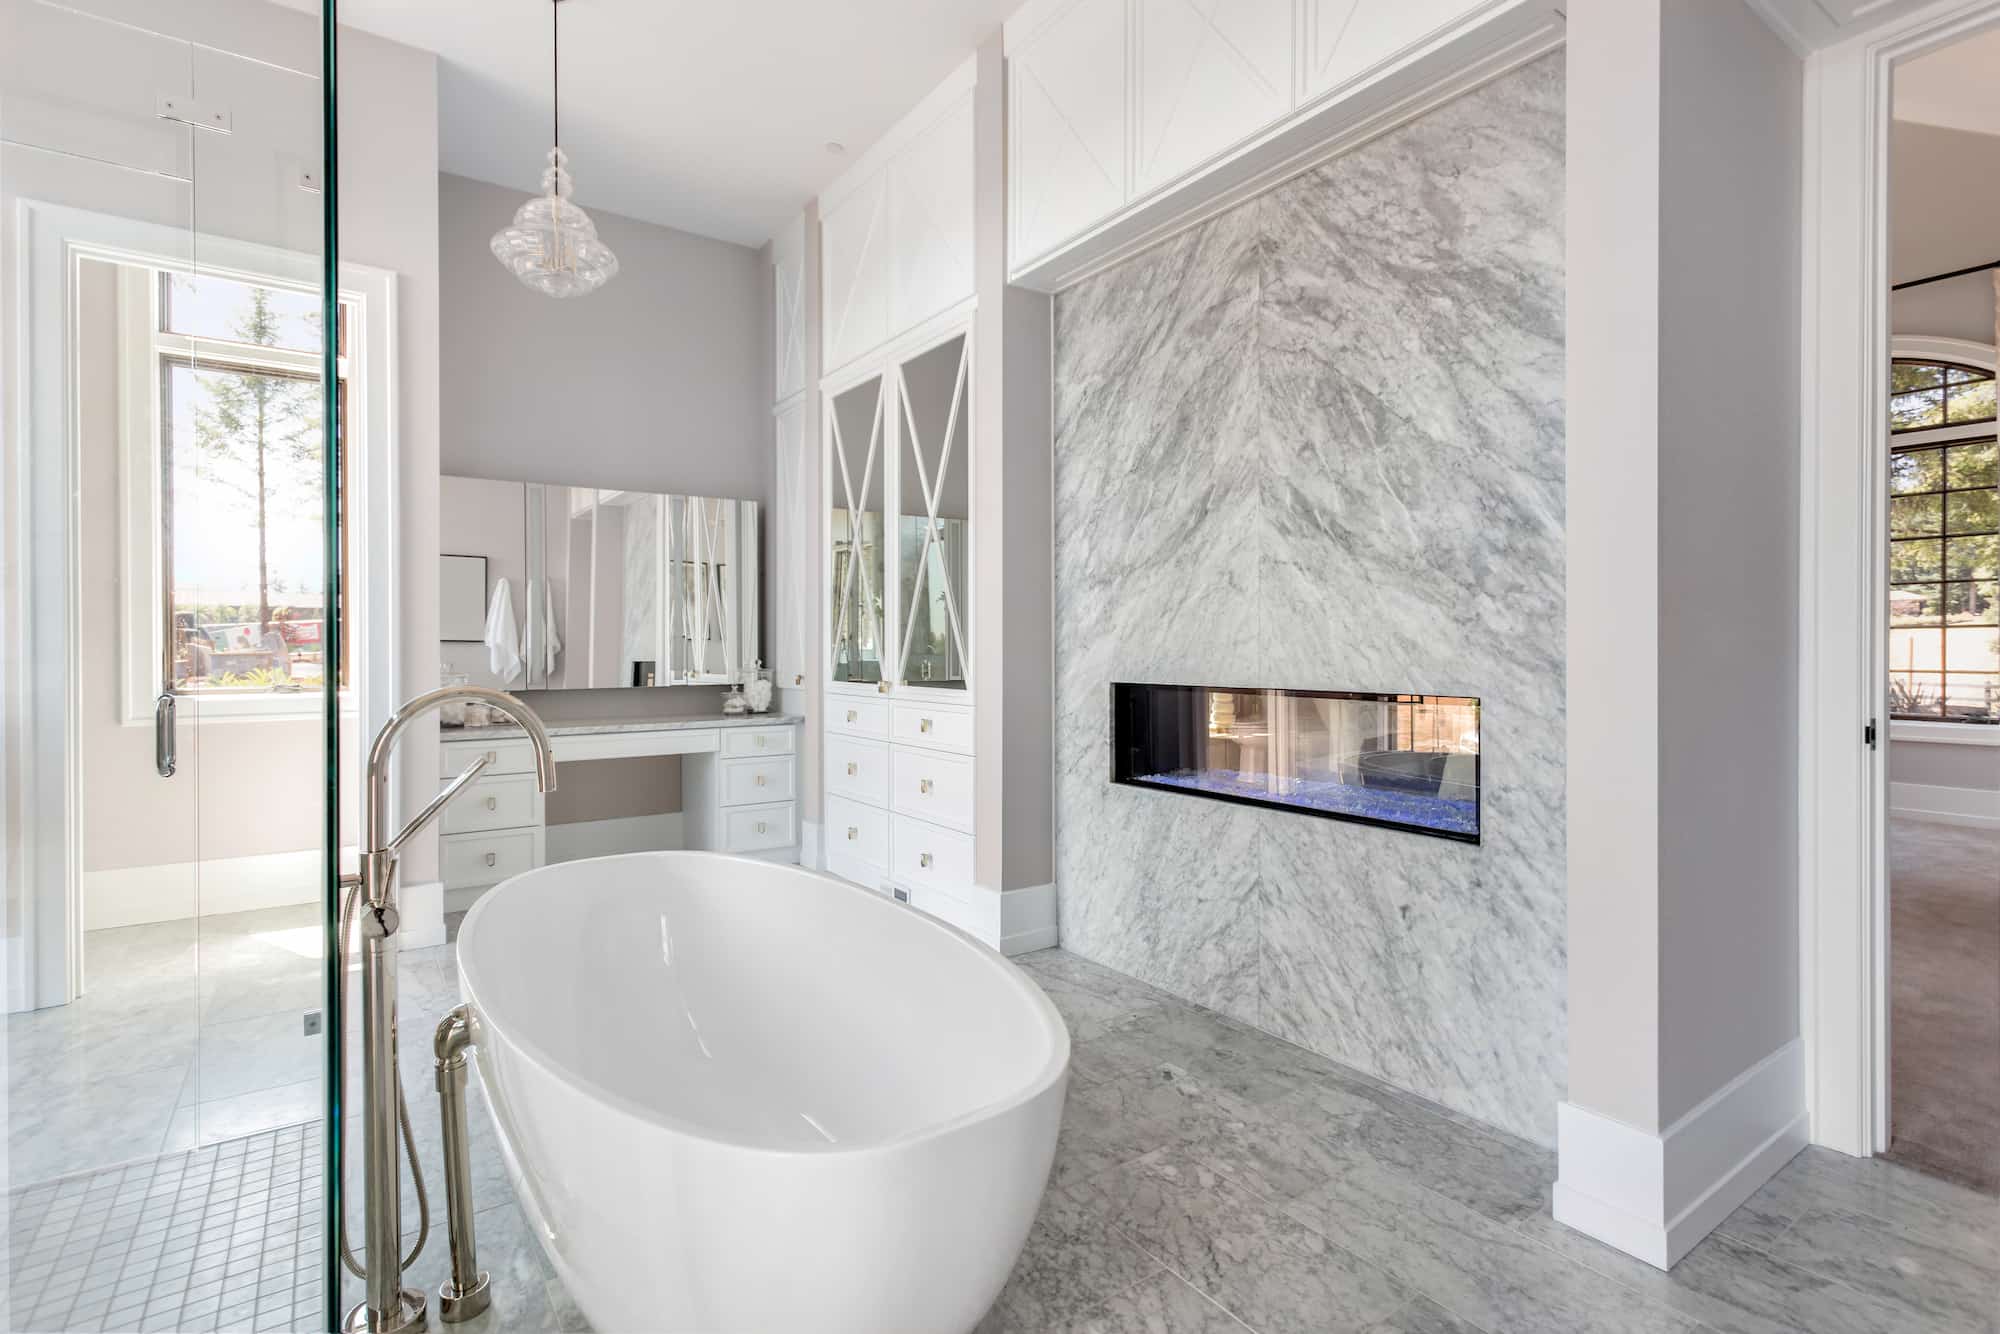 Diseño de baño minimalista con acabados de mármol y toques modernos por Gris Construcción.